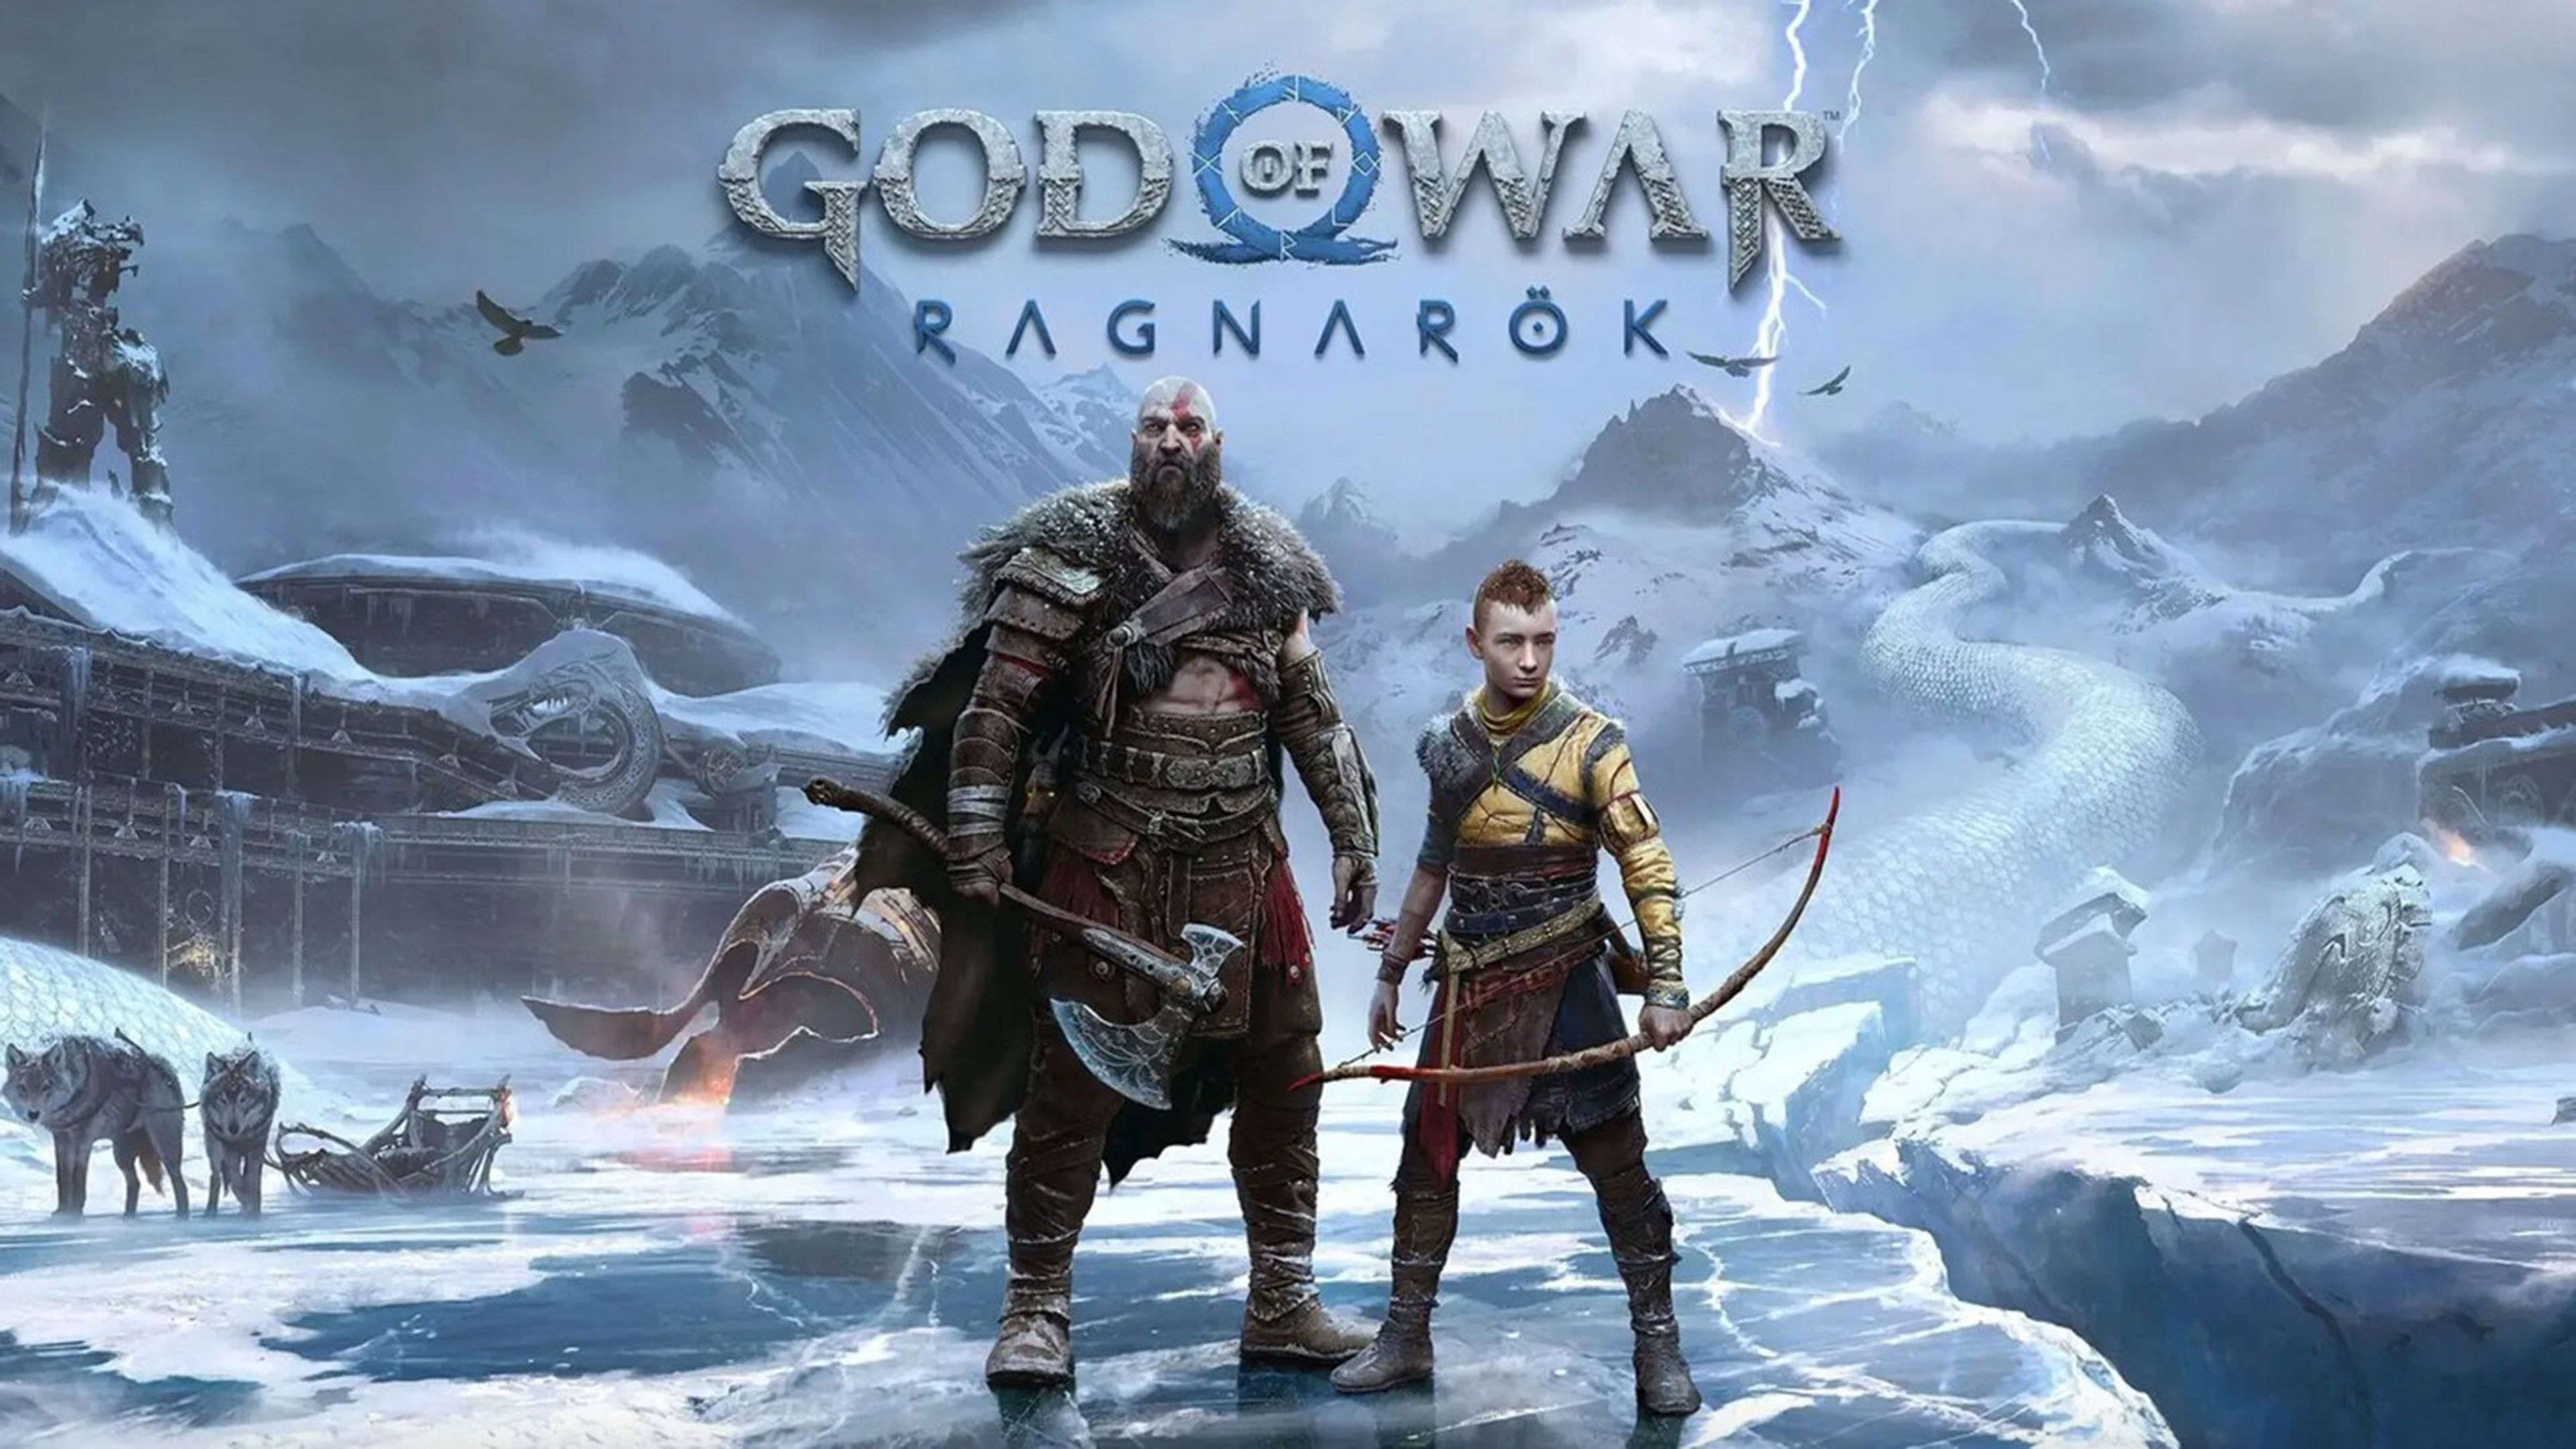 Guia de builds para o Novo Jogo+ de God of War Ragnarök